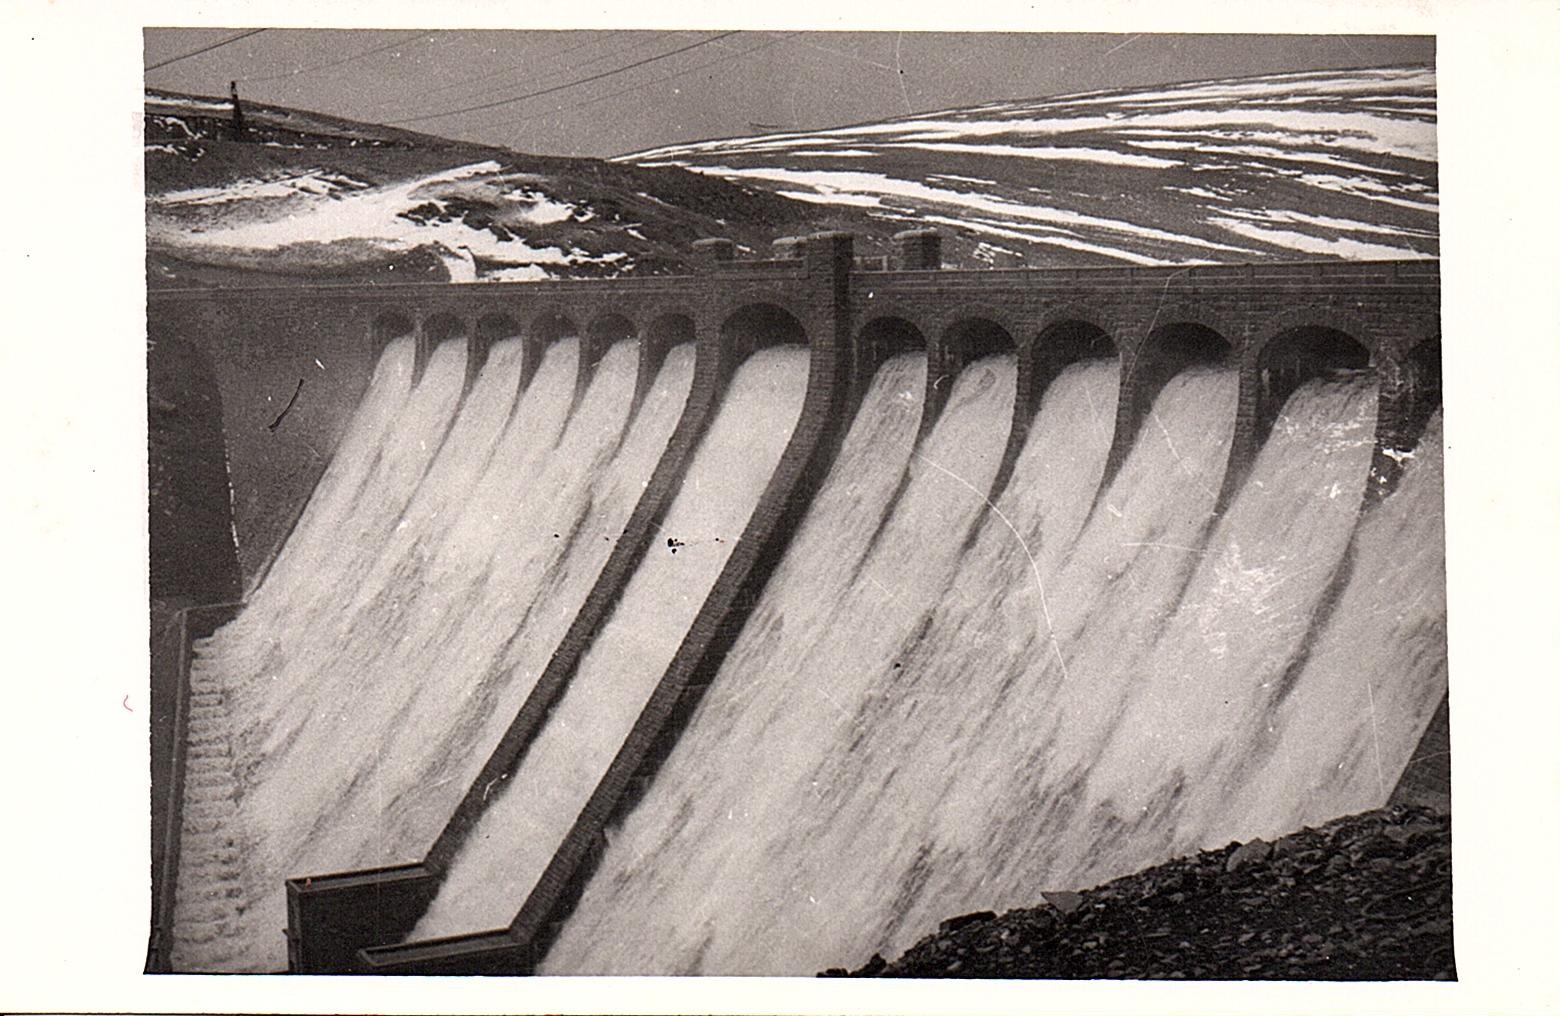 Construction of Claerwen Dam